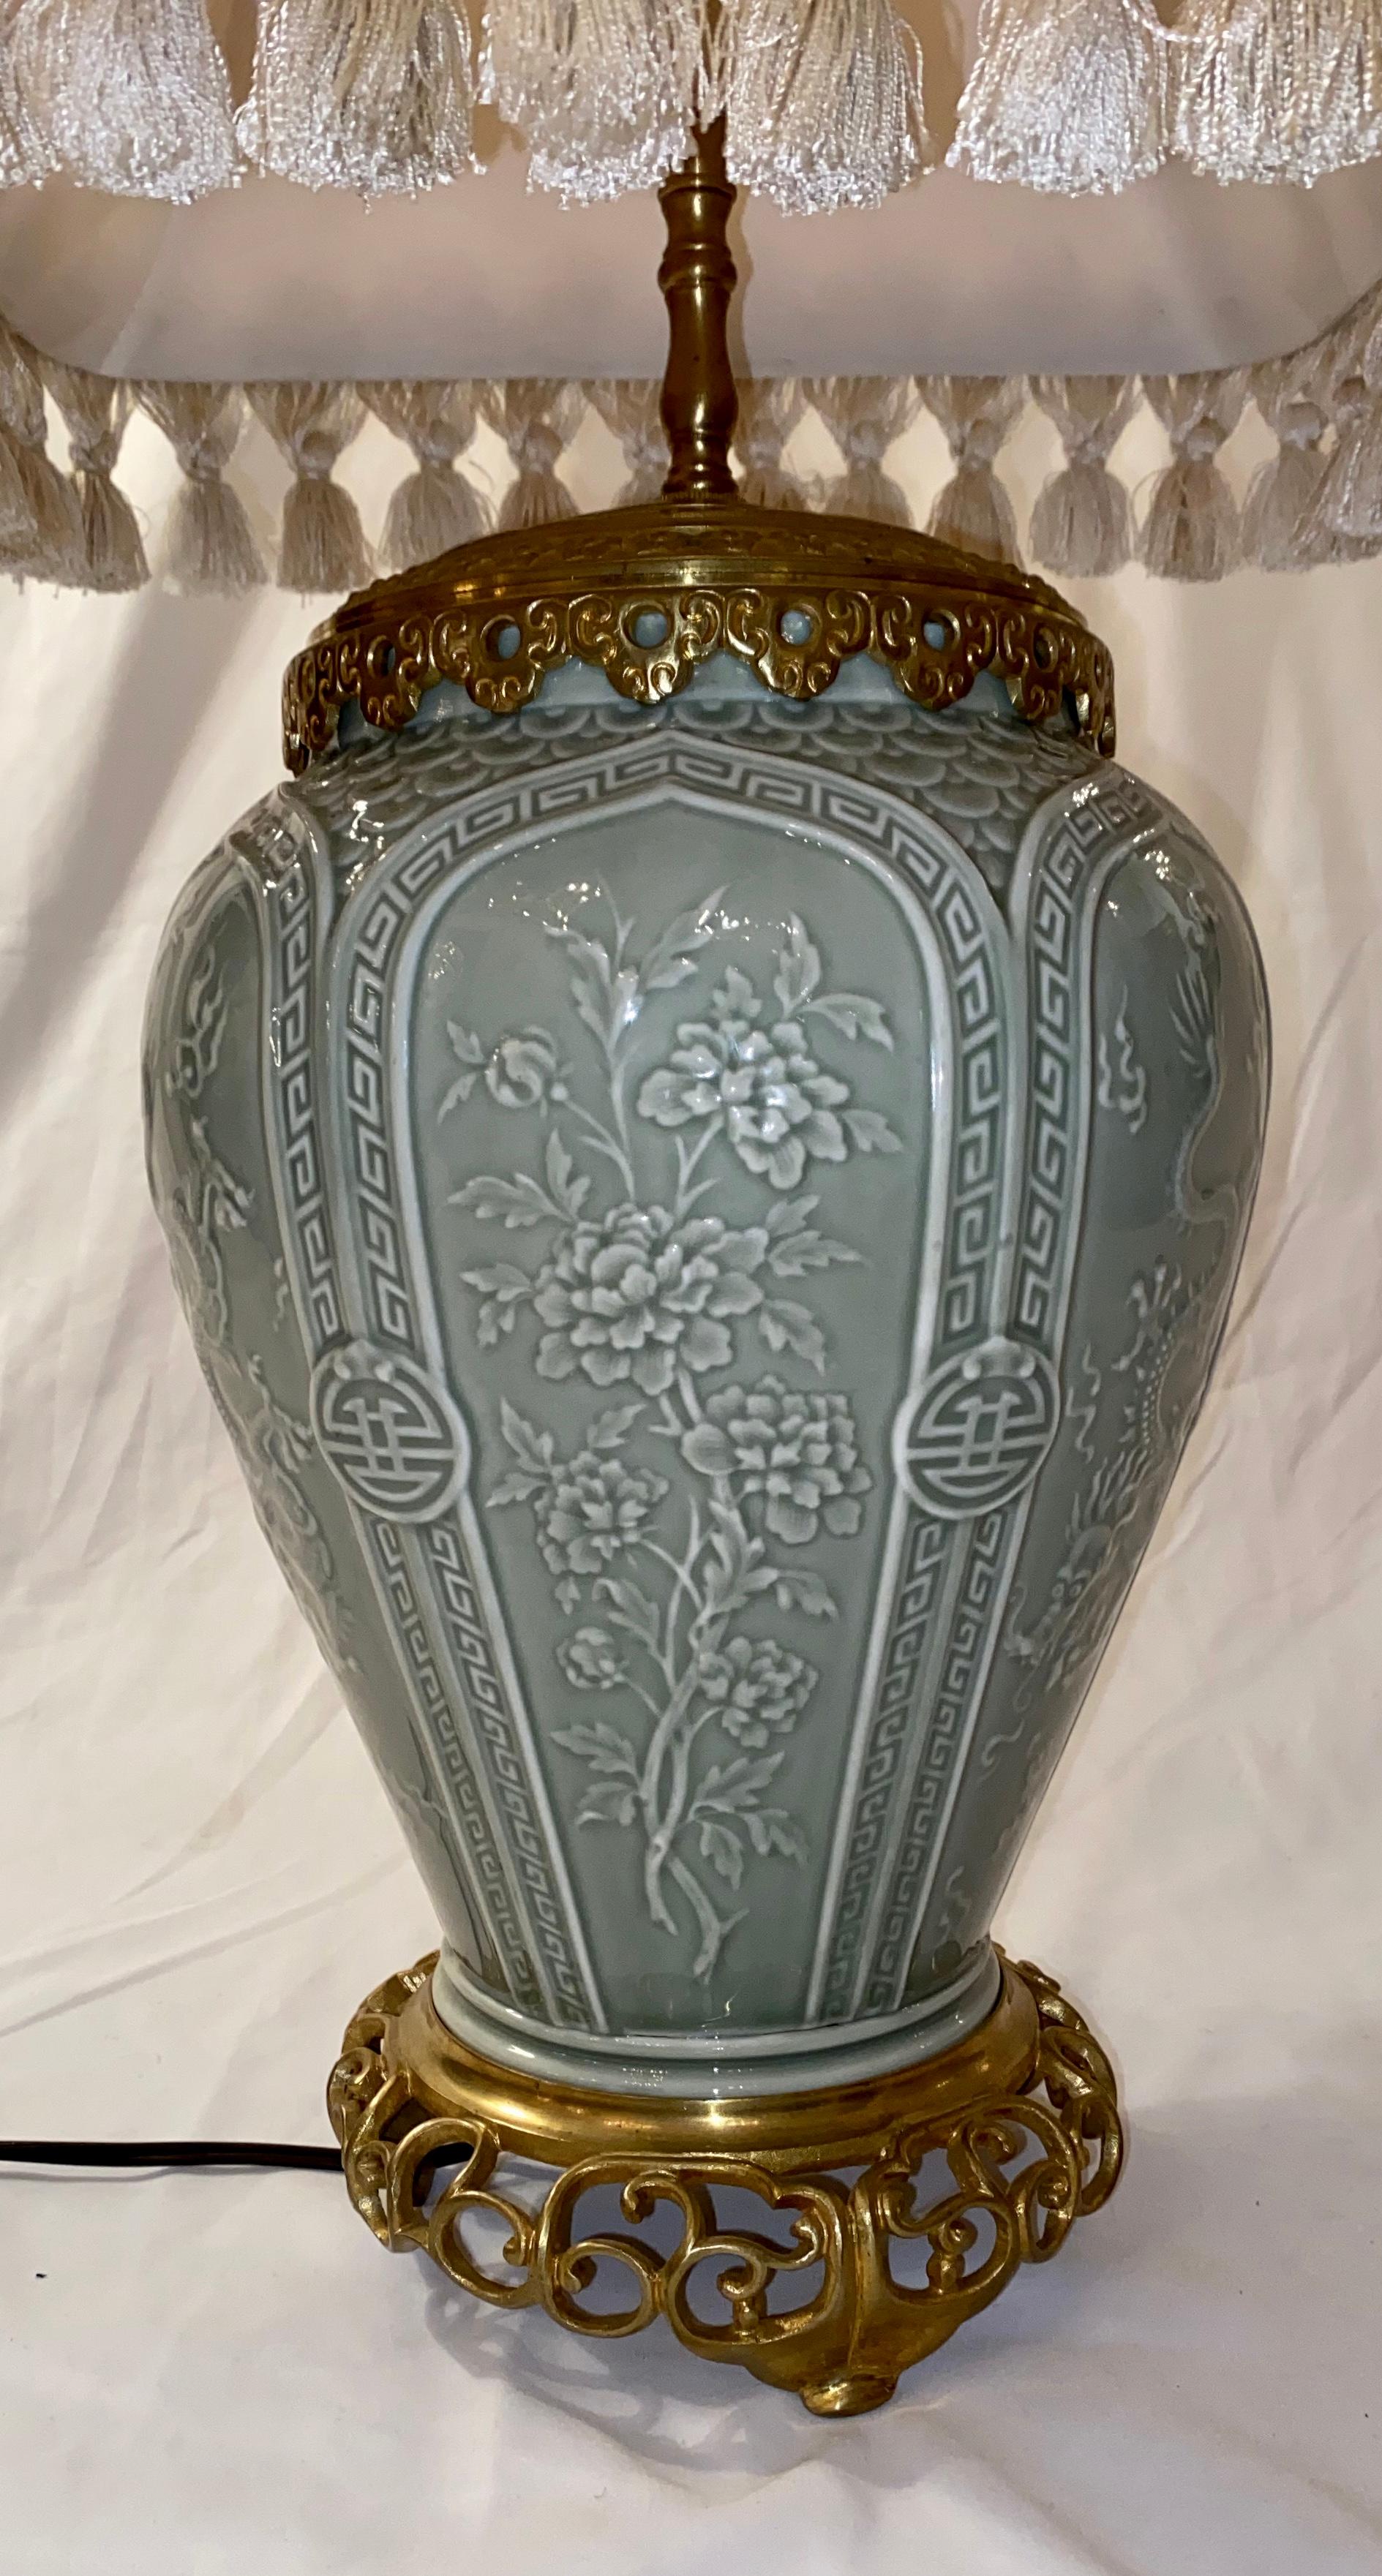 Diese schöne Lampe war zunächst eine Vase und wurde dann auf Bronze montiert, um als Lampe zu dienen. Der Ursprung ist chinesisch, aber die Lampe kam aus England.
 